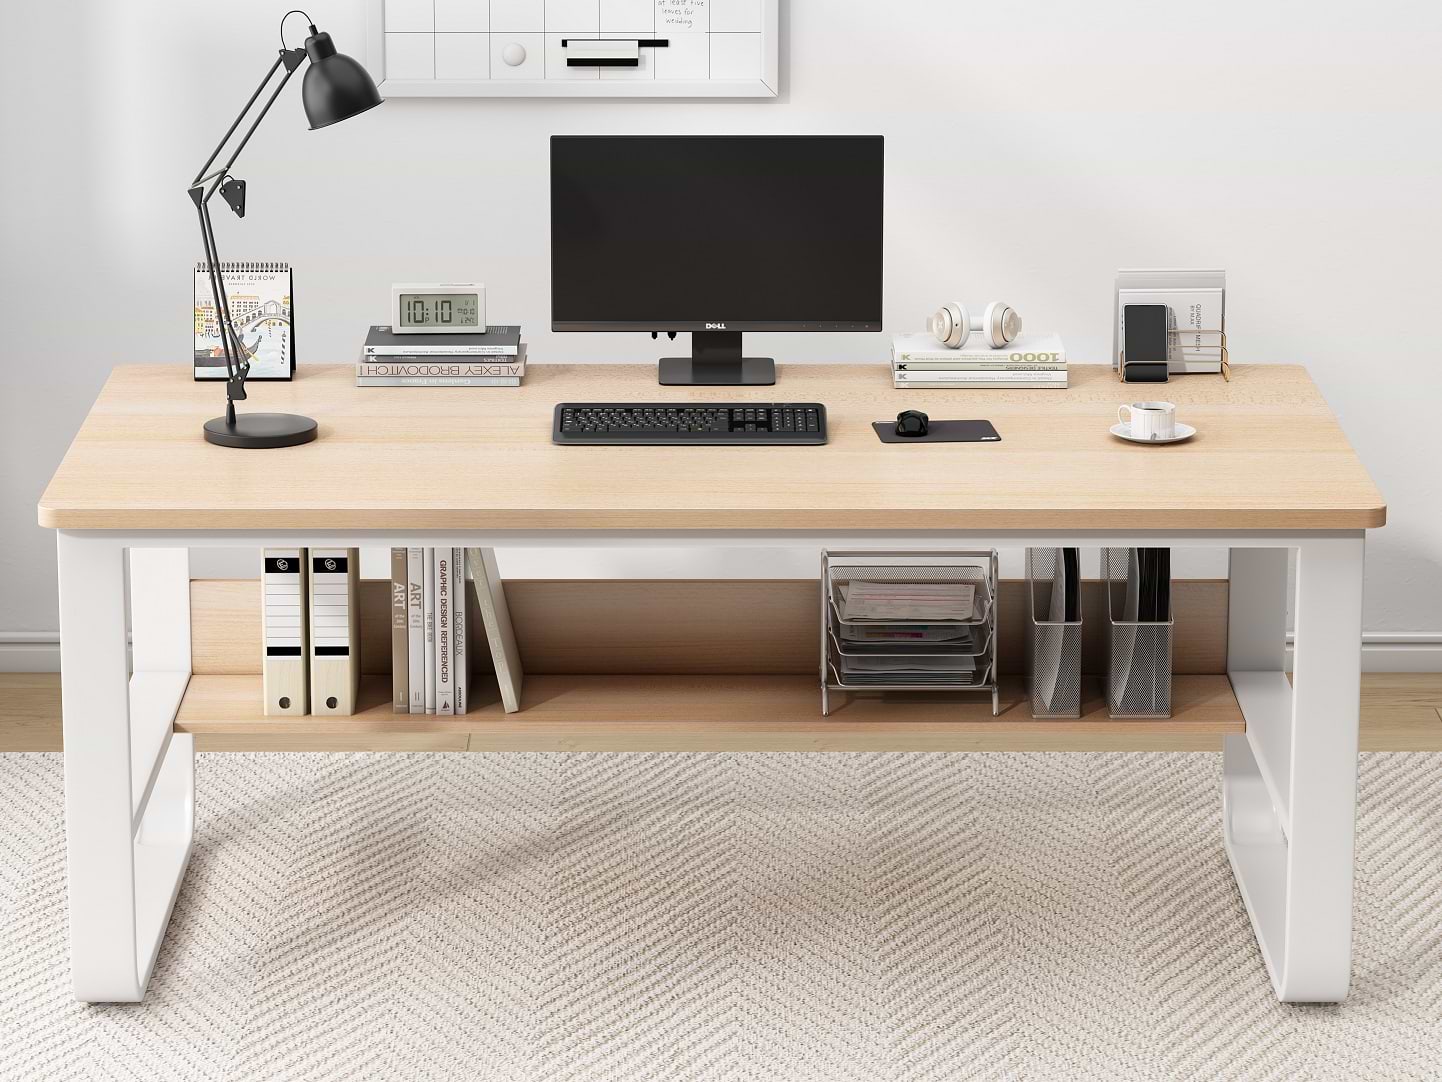 שולחן מחשב רוחב 140 ס''מ דגם TORONTO צבע עץ טבעי בשילוב לבן My office